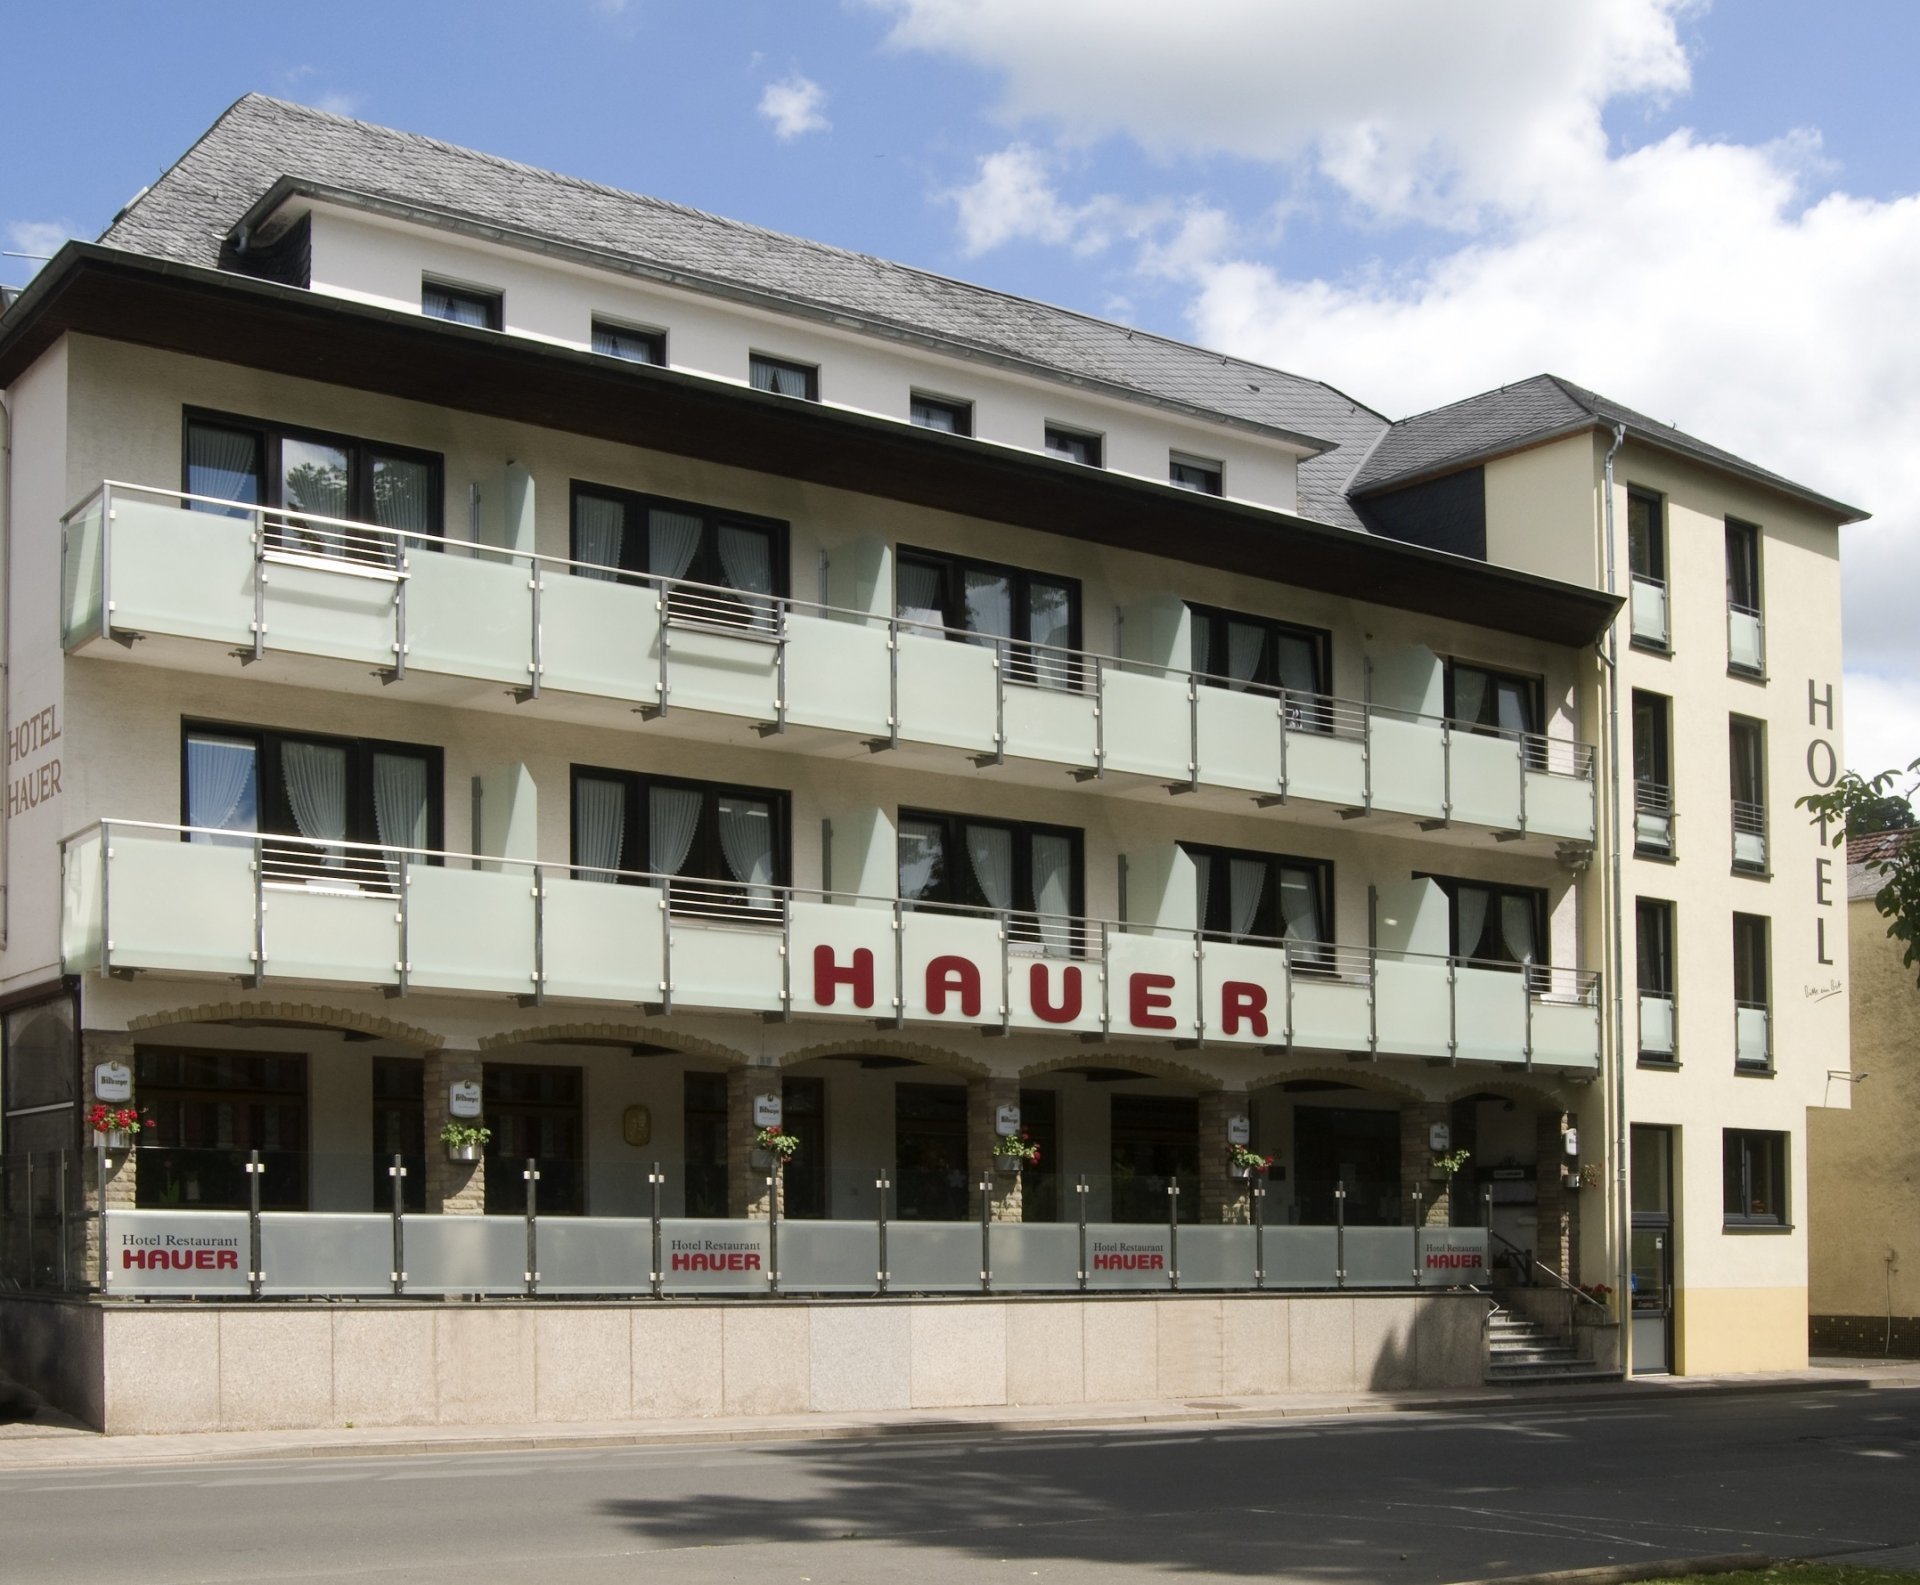 4 Tage Midweek-Special – Hotel Hauer (3 Sterne) in Bollendorf, Rheinland-Pfalz inkl. Frühstück